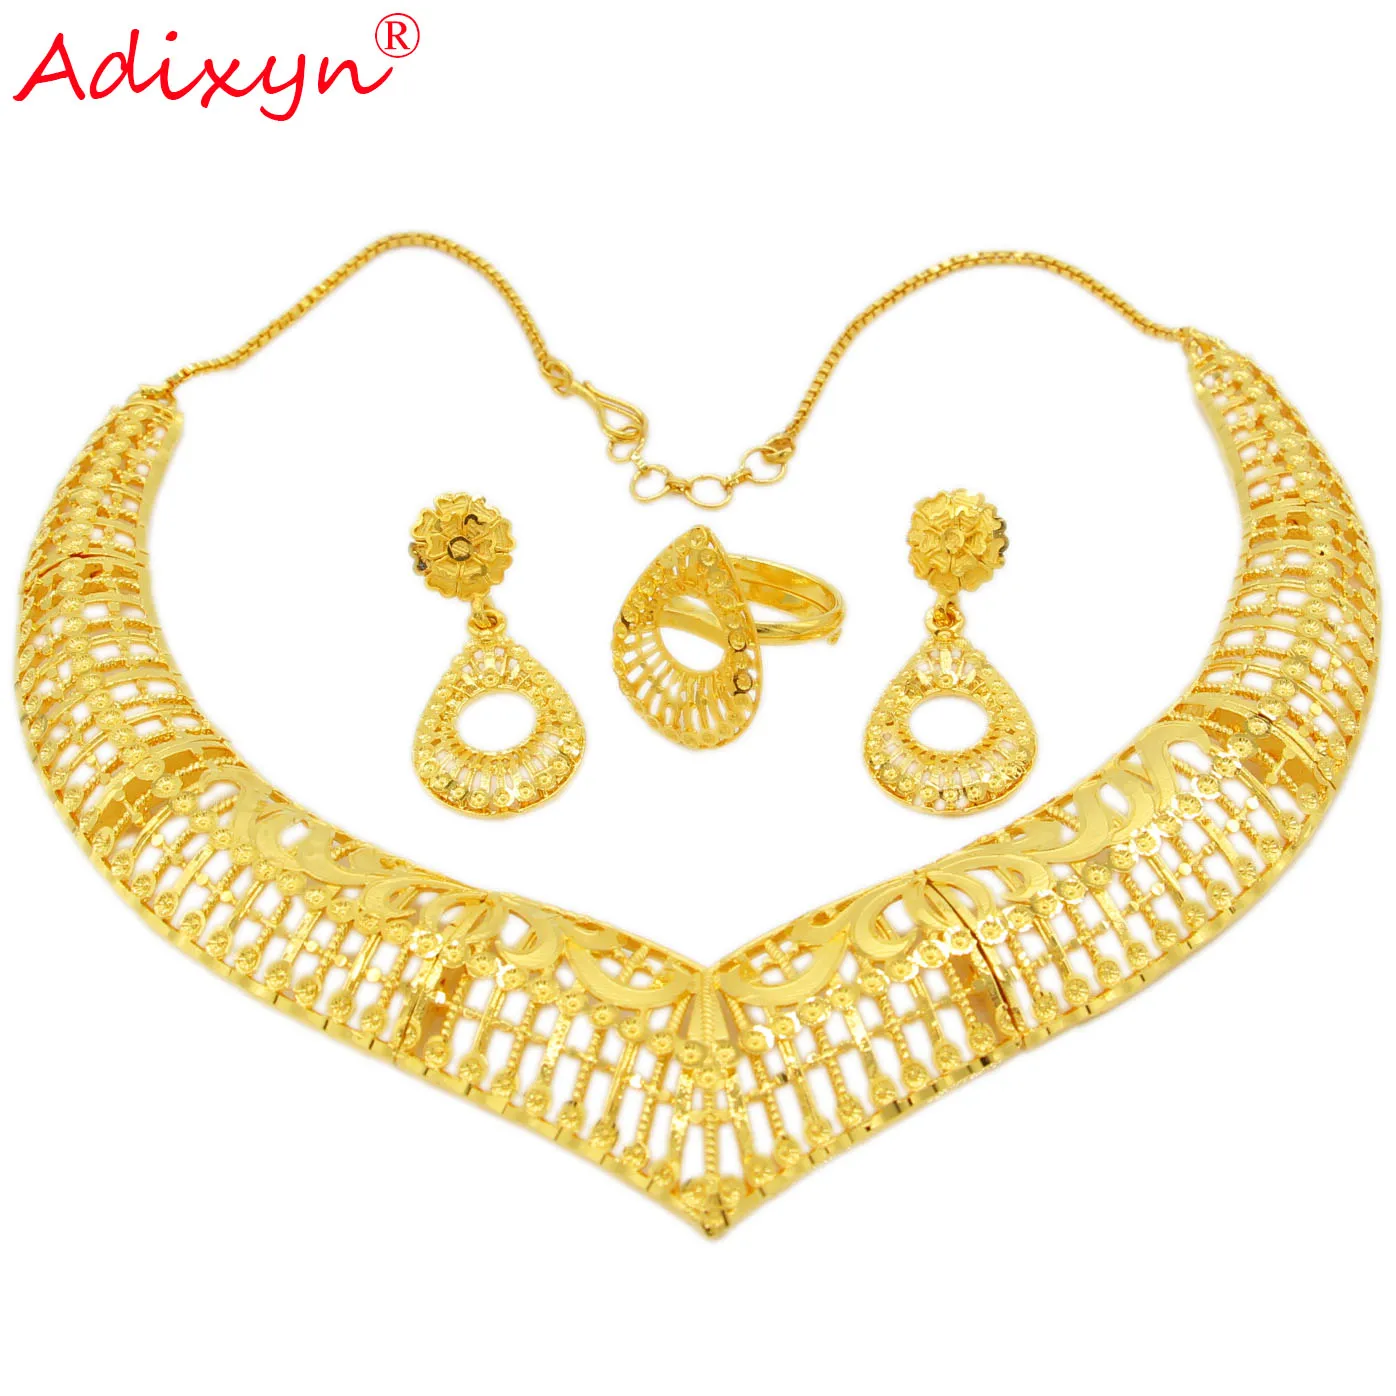 Adixyn полые формы Золото колье цепь серьги кольцо ювелирный набор золото Цвет Медь Ювелирные изделия для женщин девушек вечерние подарки N12307